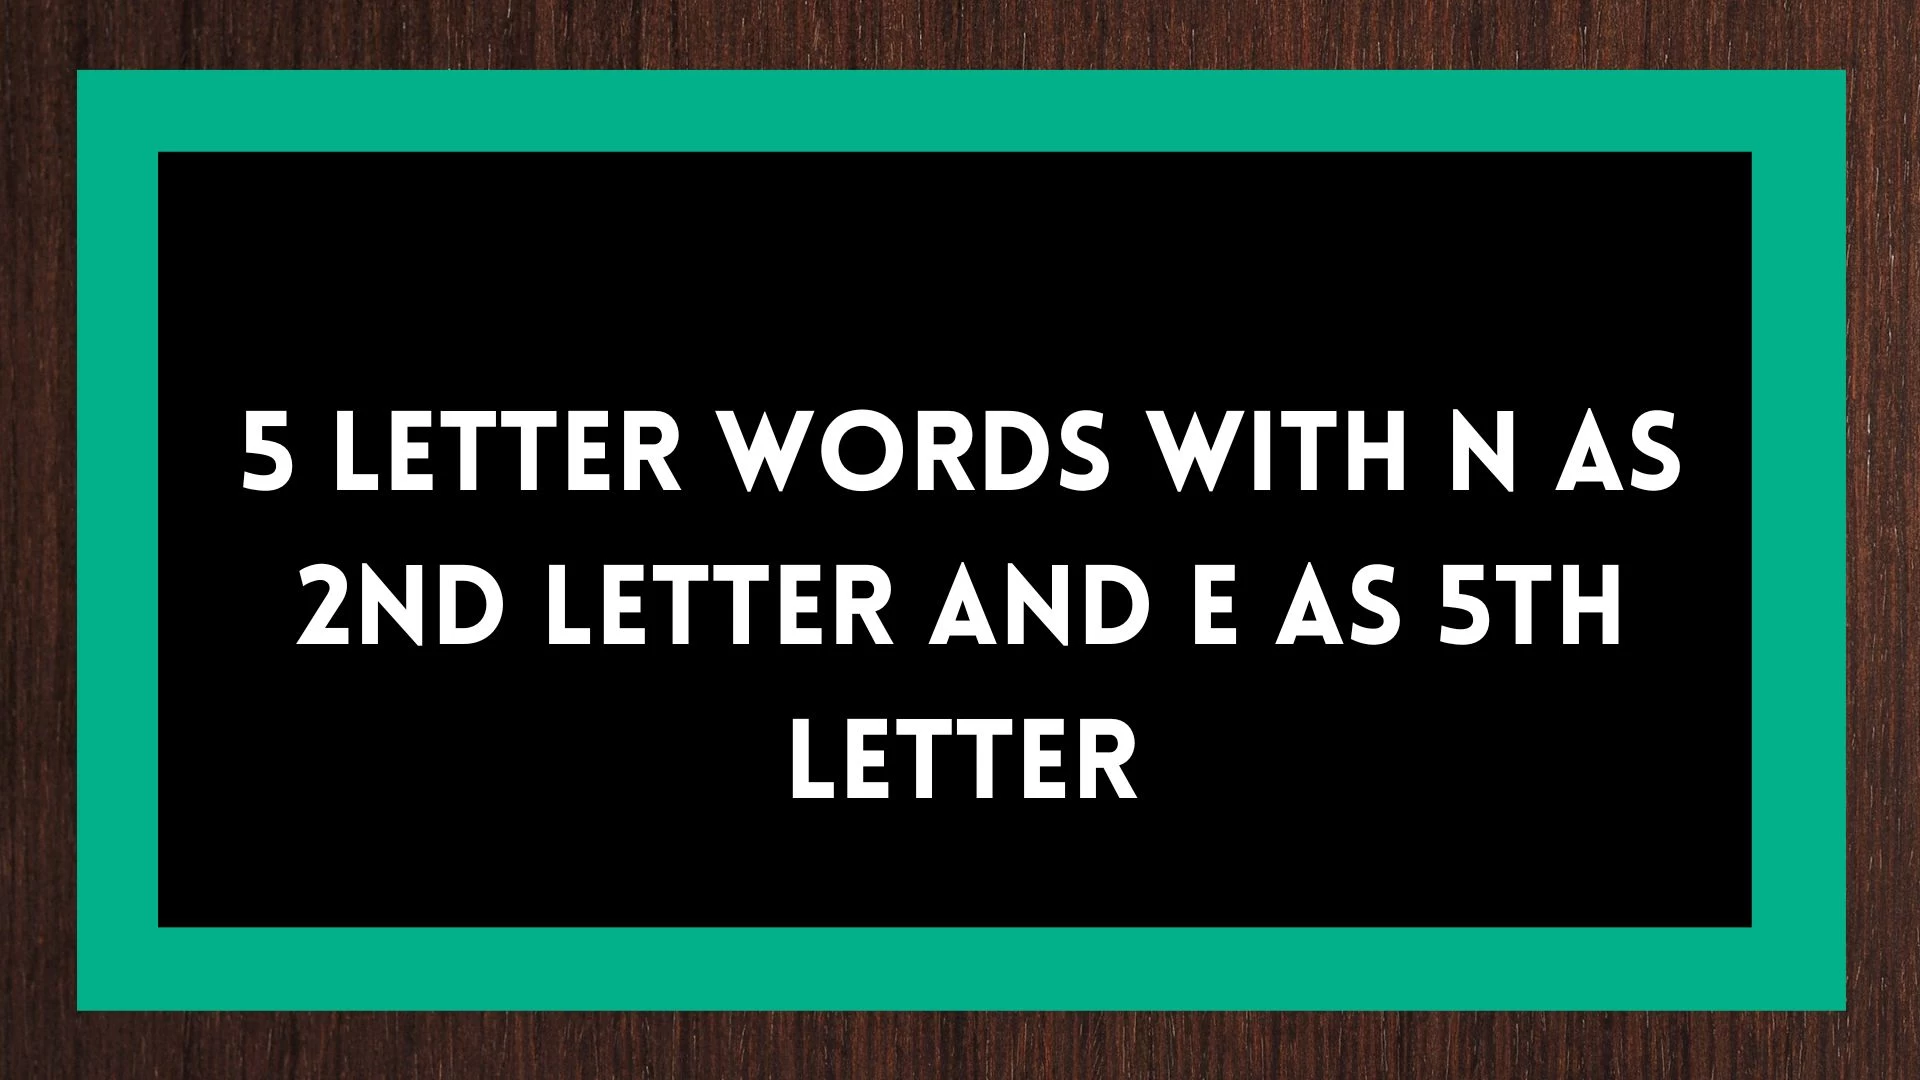 Palabras de 5 letras, con la 2da letra N y la 5ta letra E, una lista de palabras de cinco letras, con la 2da letra N y la 5ta letra E.